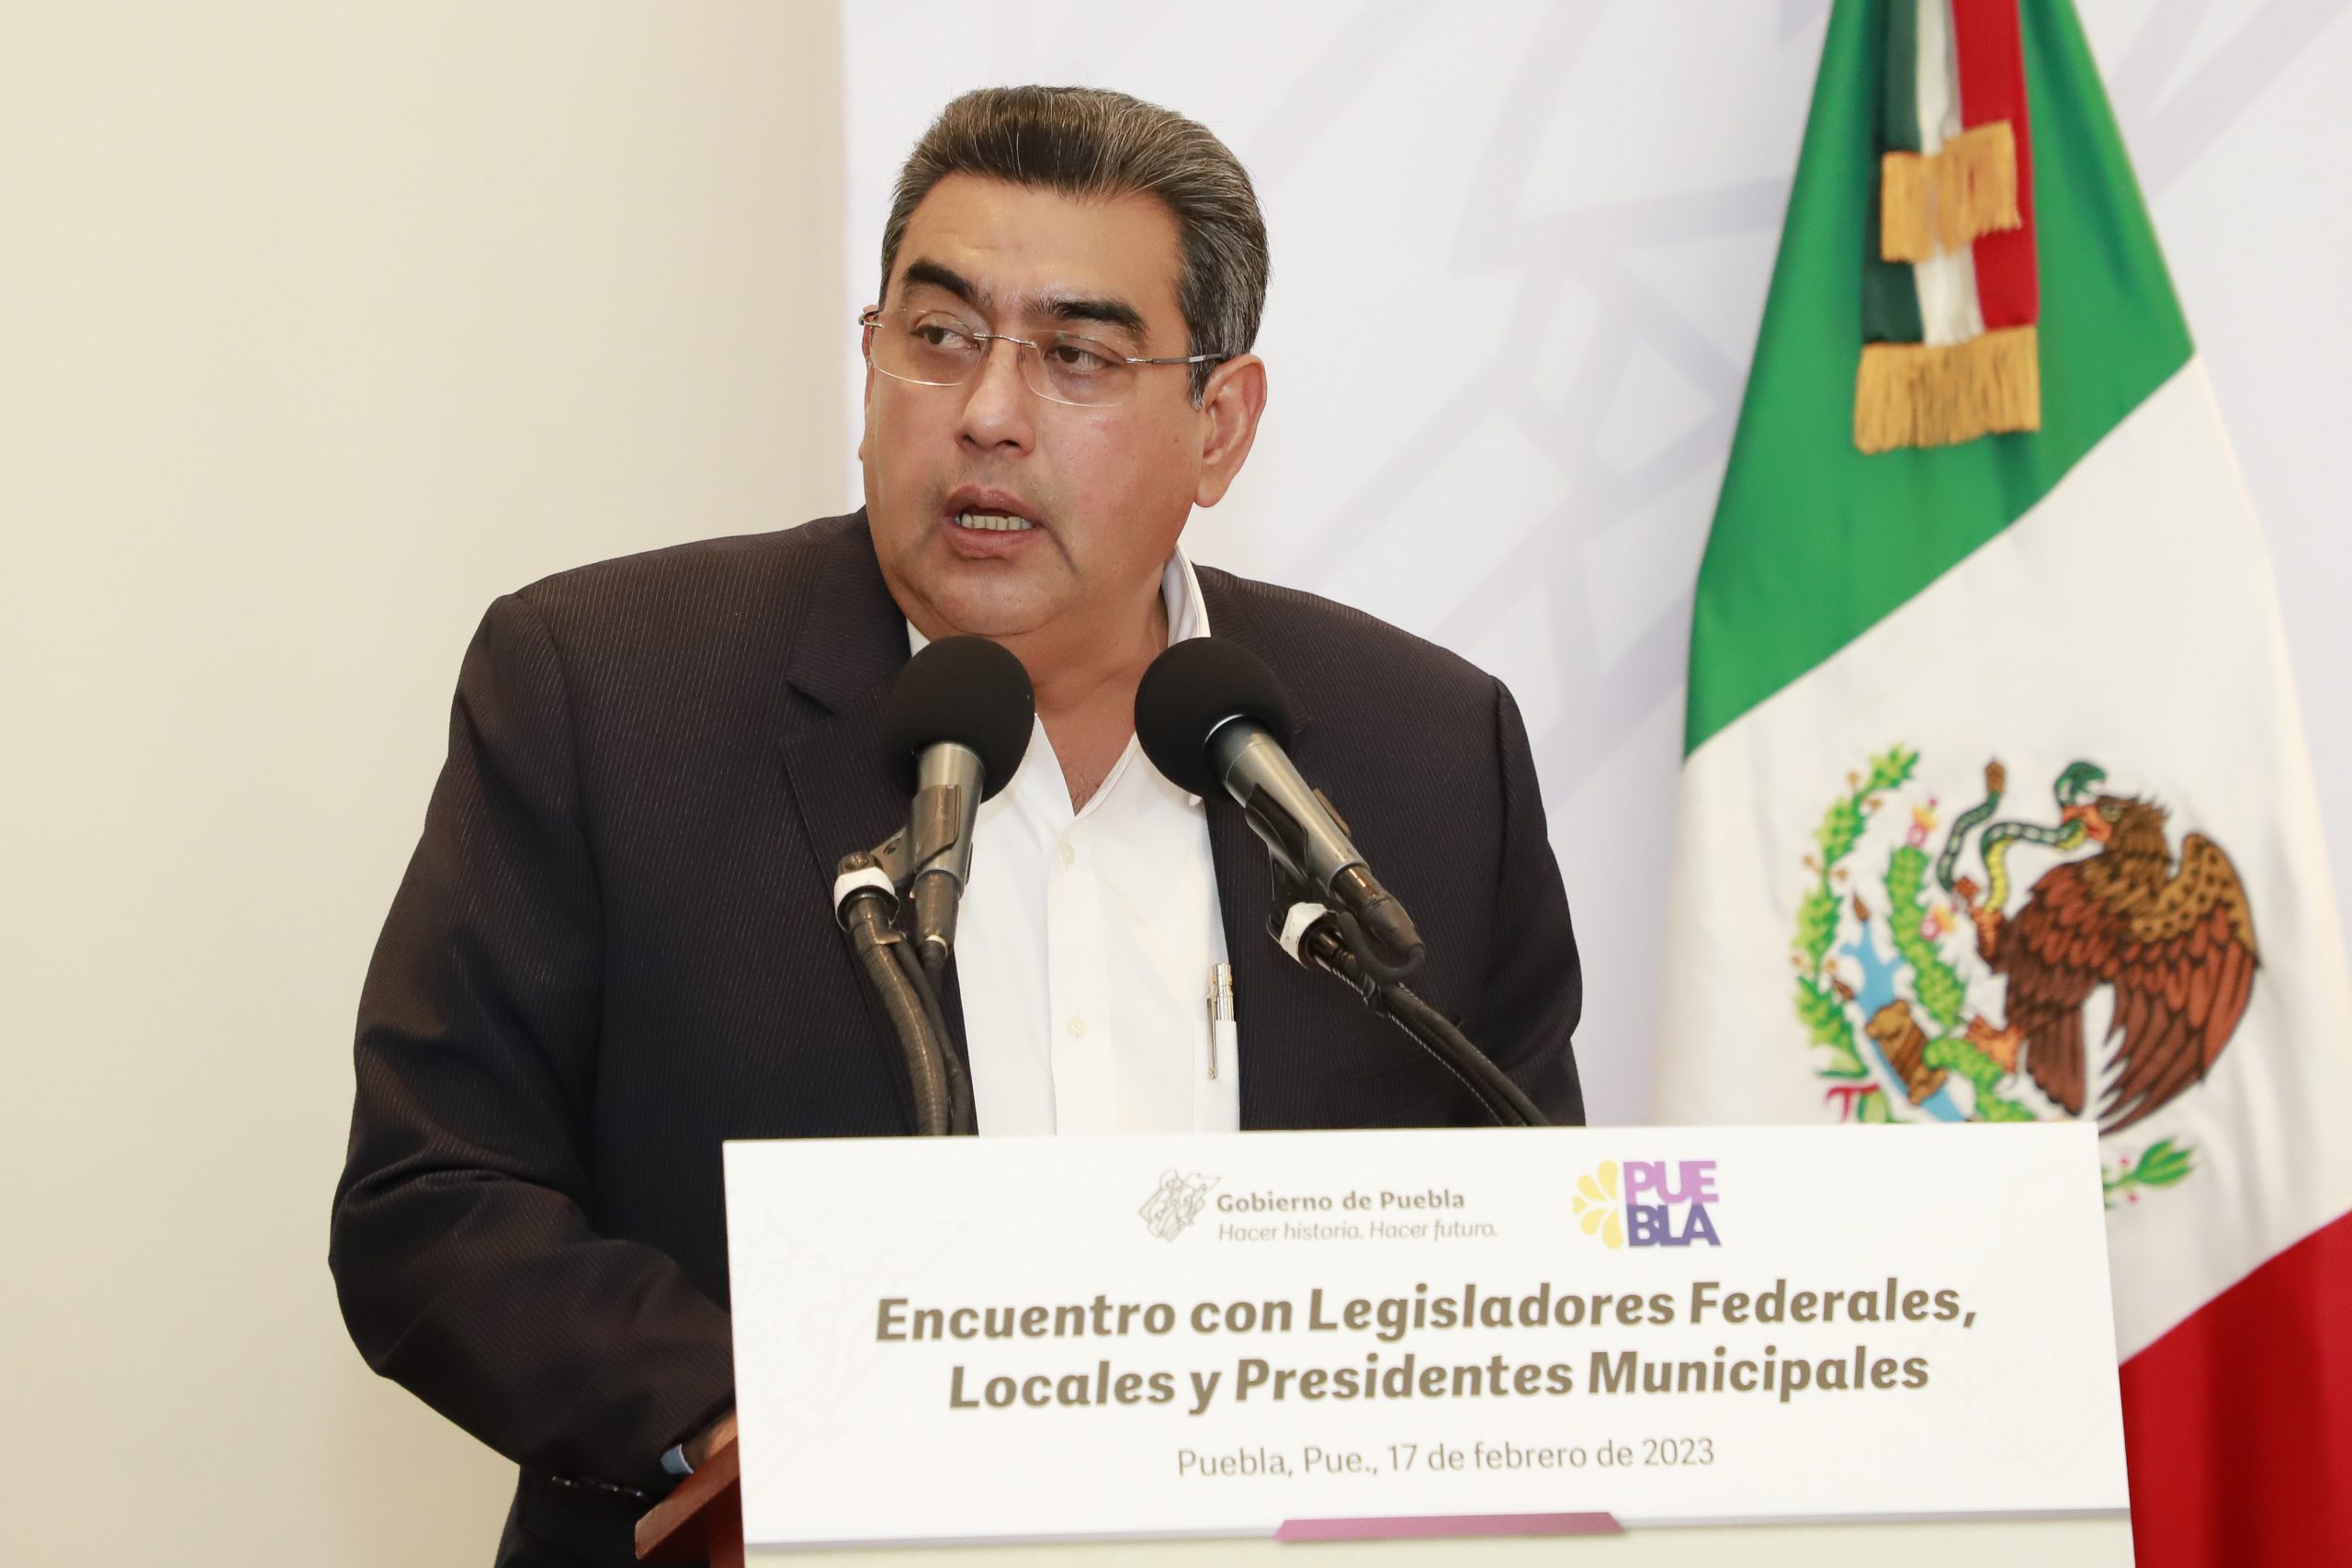 Gobernador Céspedes Peregrina promueve agenda por la gobernabilidad de Puebla